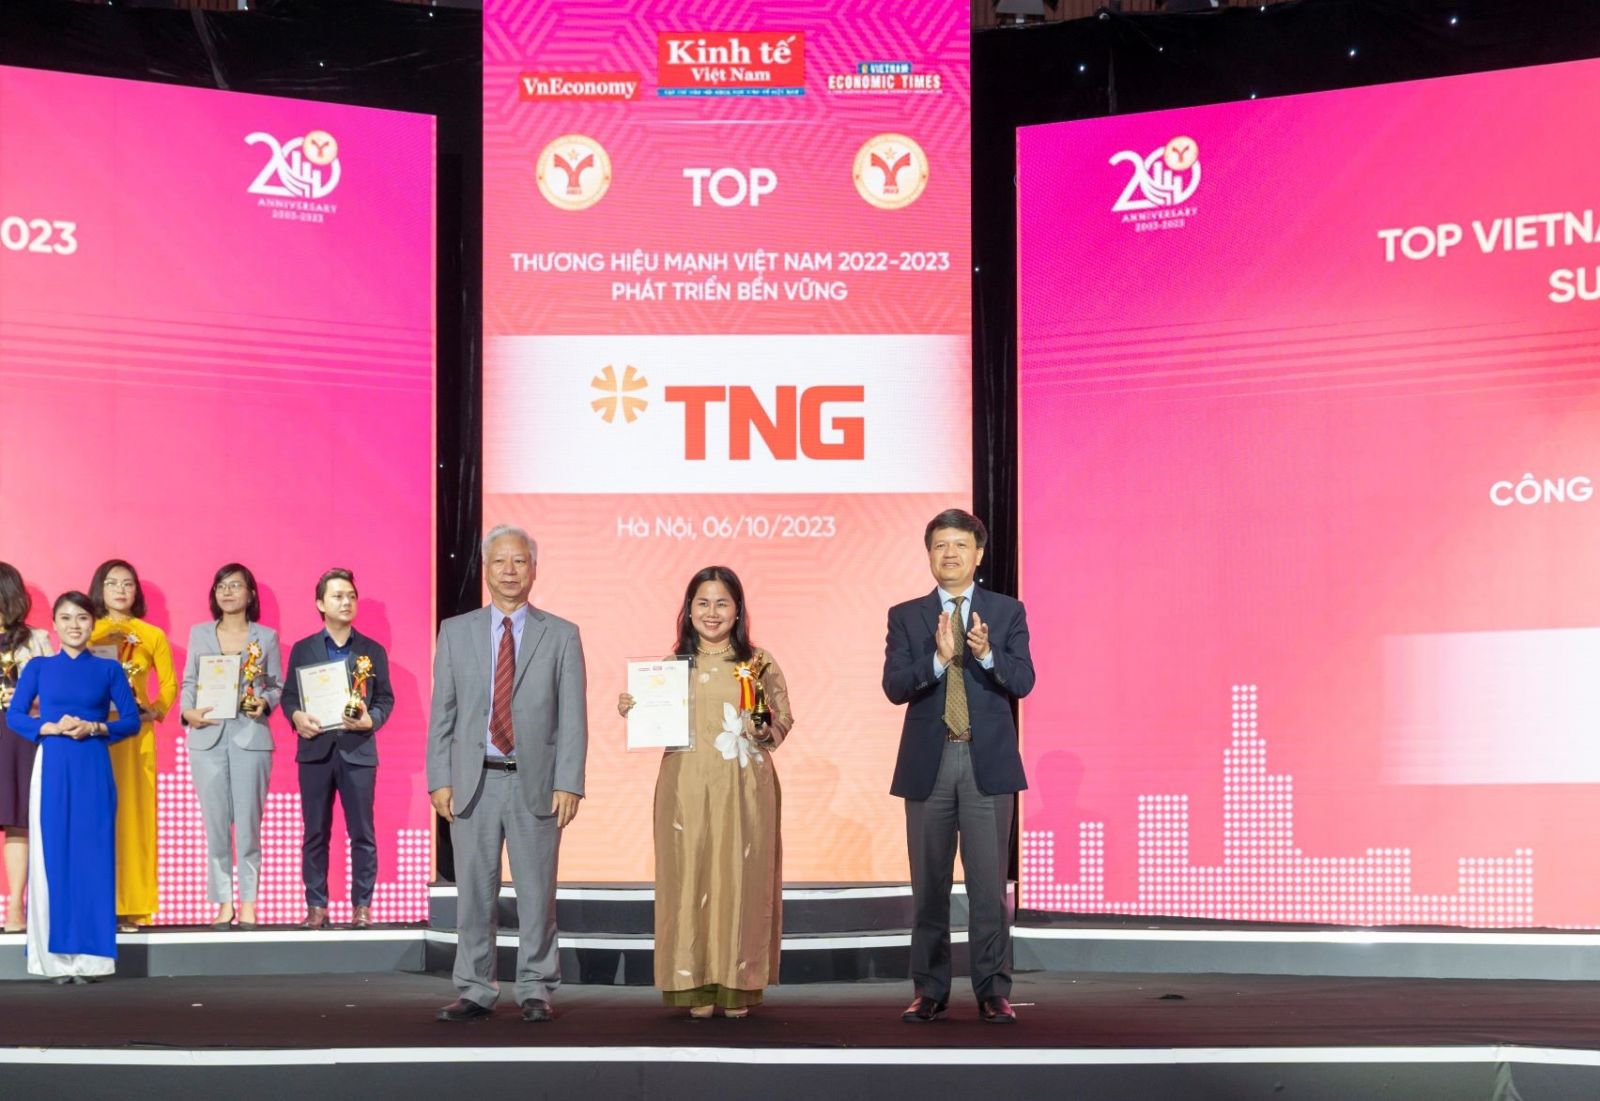  Đại diện TNG Holdings Vietnam nhận giải Thương hiệu mạnh 2022 - 2023